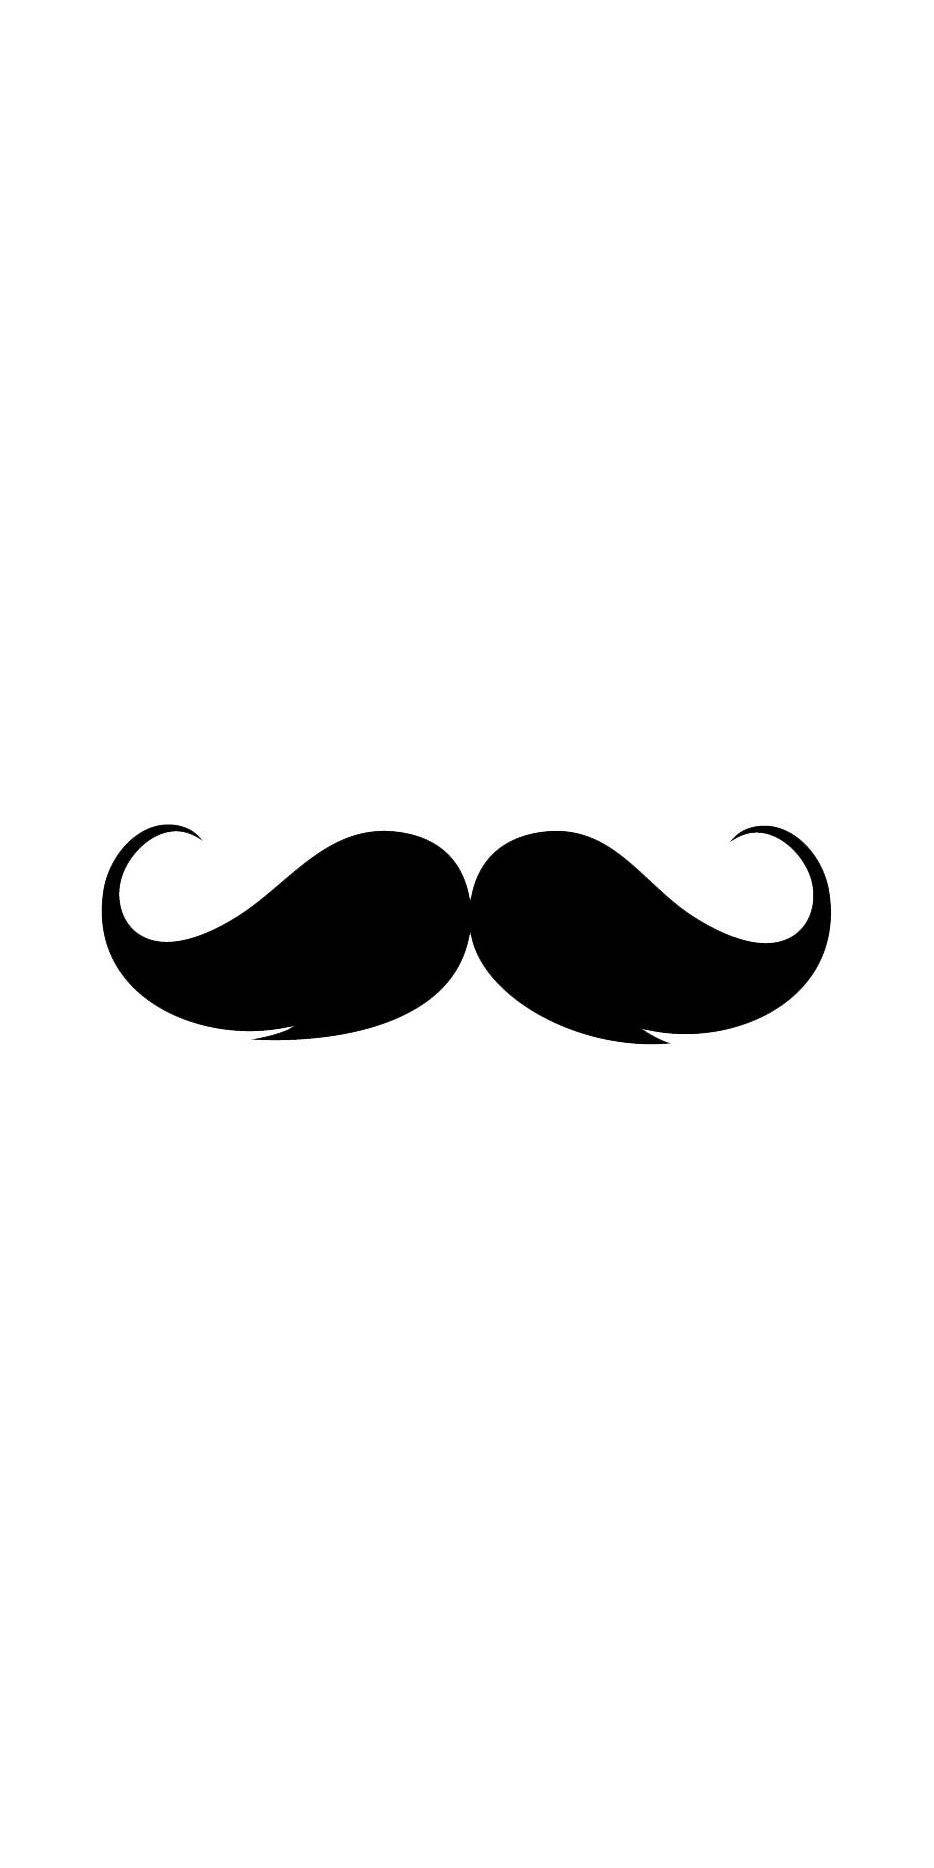 Mustache iPhone Wallpaper. Mustache wallpaper, Beard logo design, Beard wallpaper